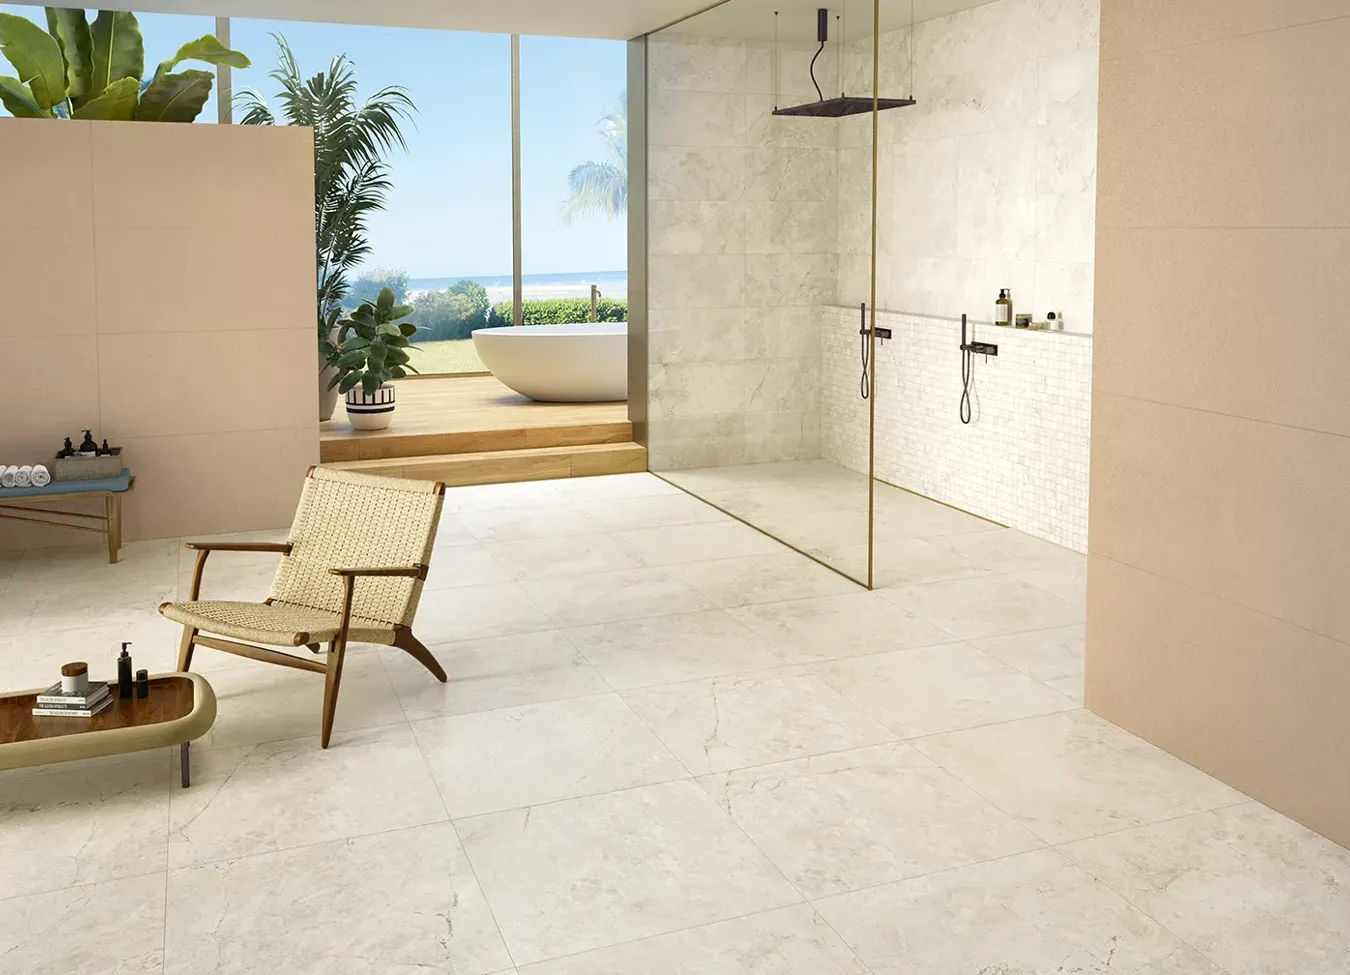 Baño al aire libre con plato de ducha efecto piedra de la colección Omnia, una perfecta fusión de interior y exterior.